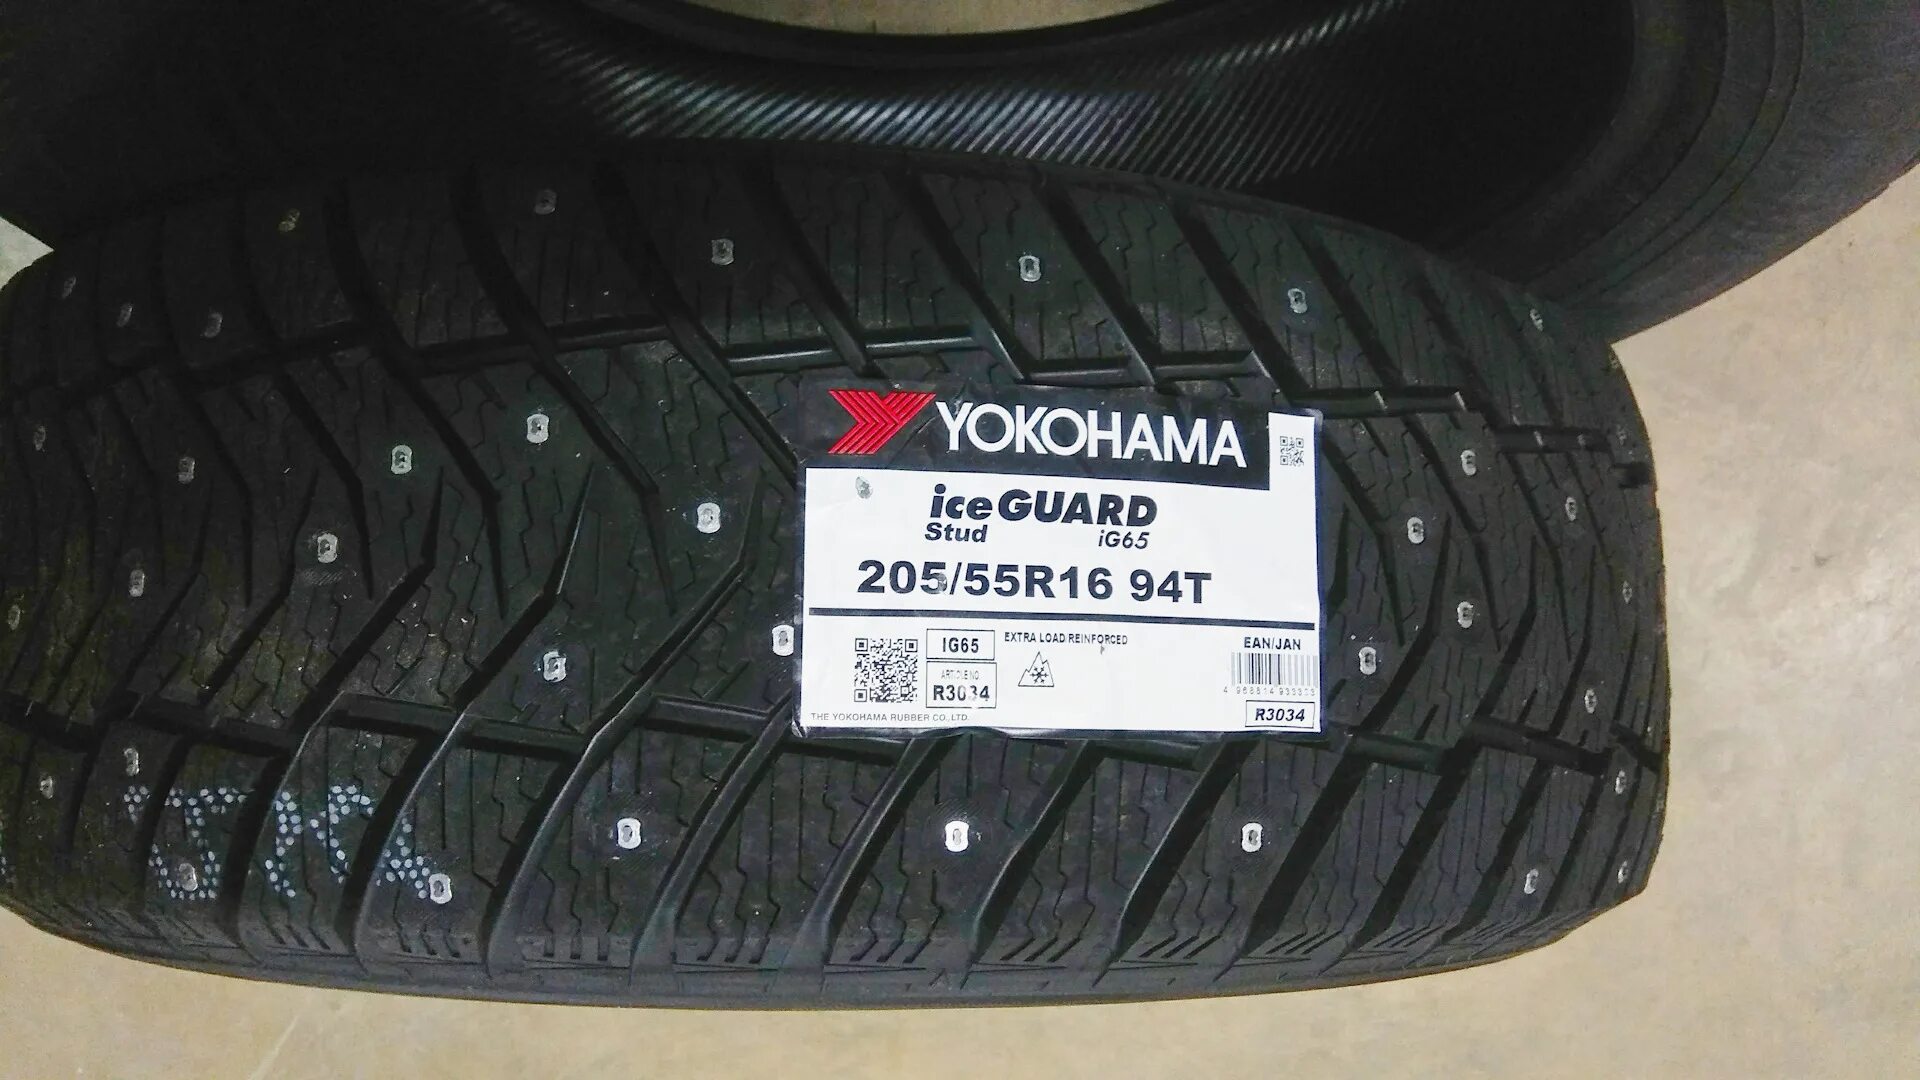 Yokohama Ice Guard ig65. Yokohama Ice Guard ig55 215/65 r16. Зимние шины Yokohama Ice Guard ig65. Yokohama Ice Guard ig65 205/55 r16 94t. Айс гуард 65